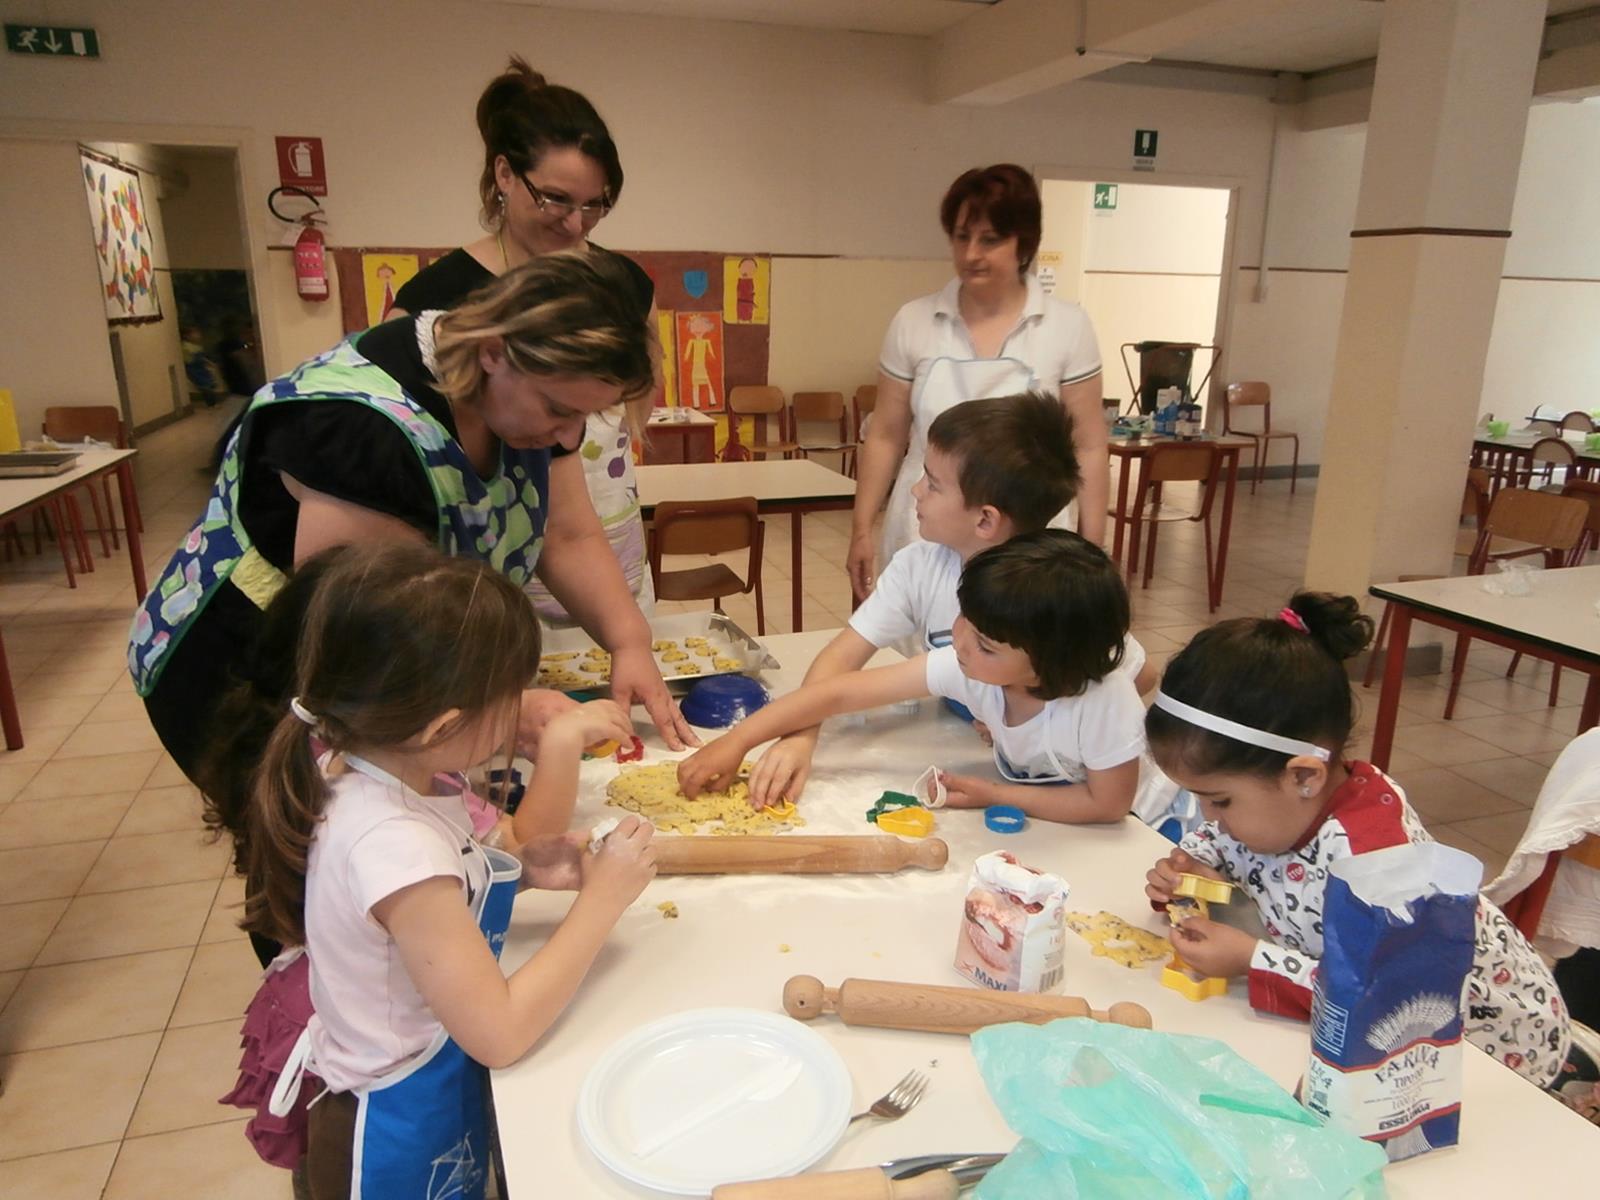 Children in the world presenta: 4 Mani in cucina